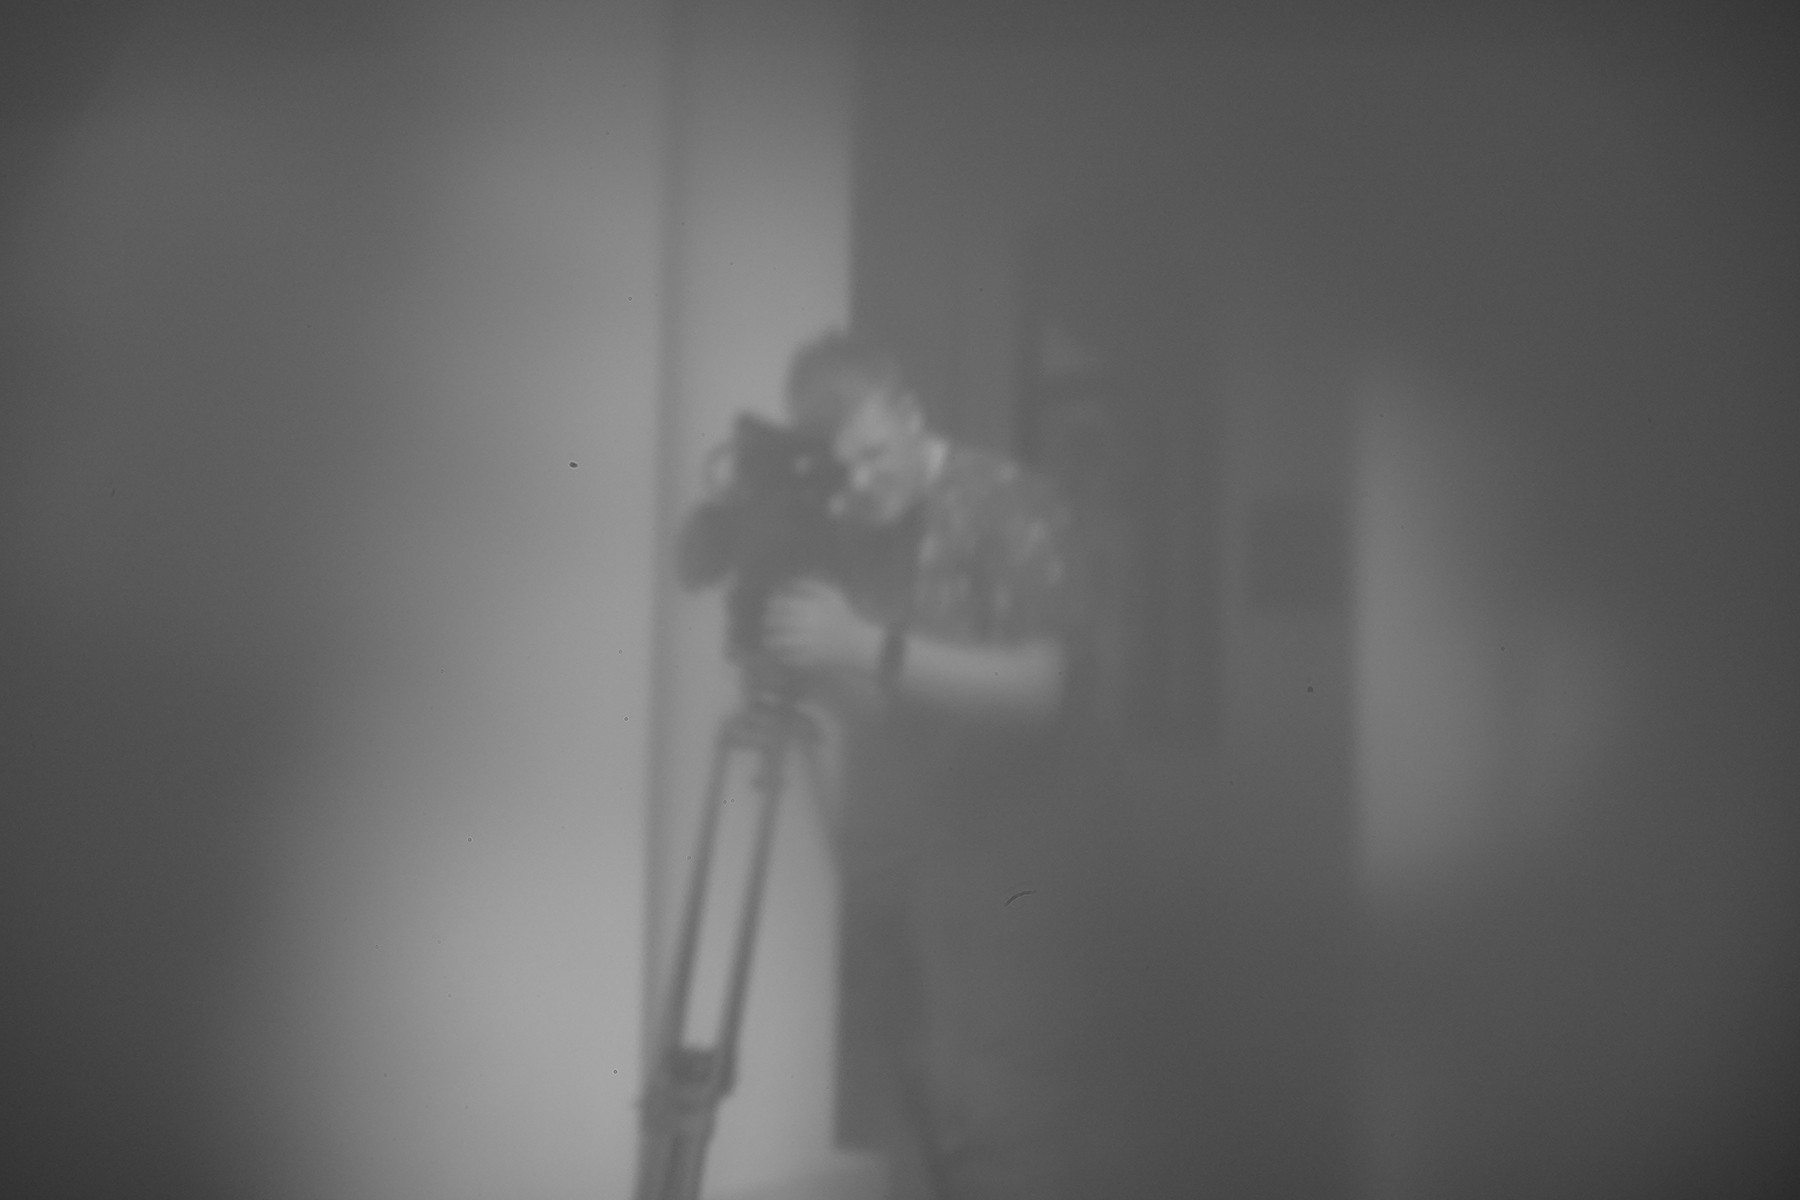 Postać młodego mężczyzny patrzącego przez ustawioną na statywie kamerę. W tle ściana budynku z oknem. Fotografia wykonana techniką camera obscura, czarno-biała, lekko rozmyta, zaciemniona na rogach.